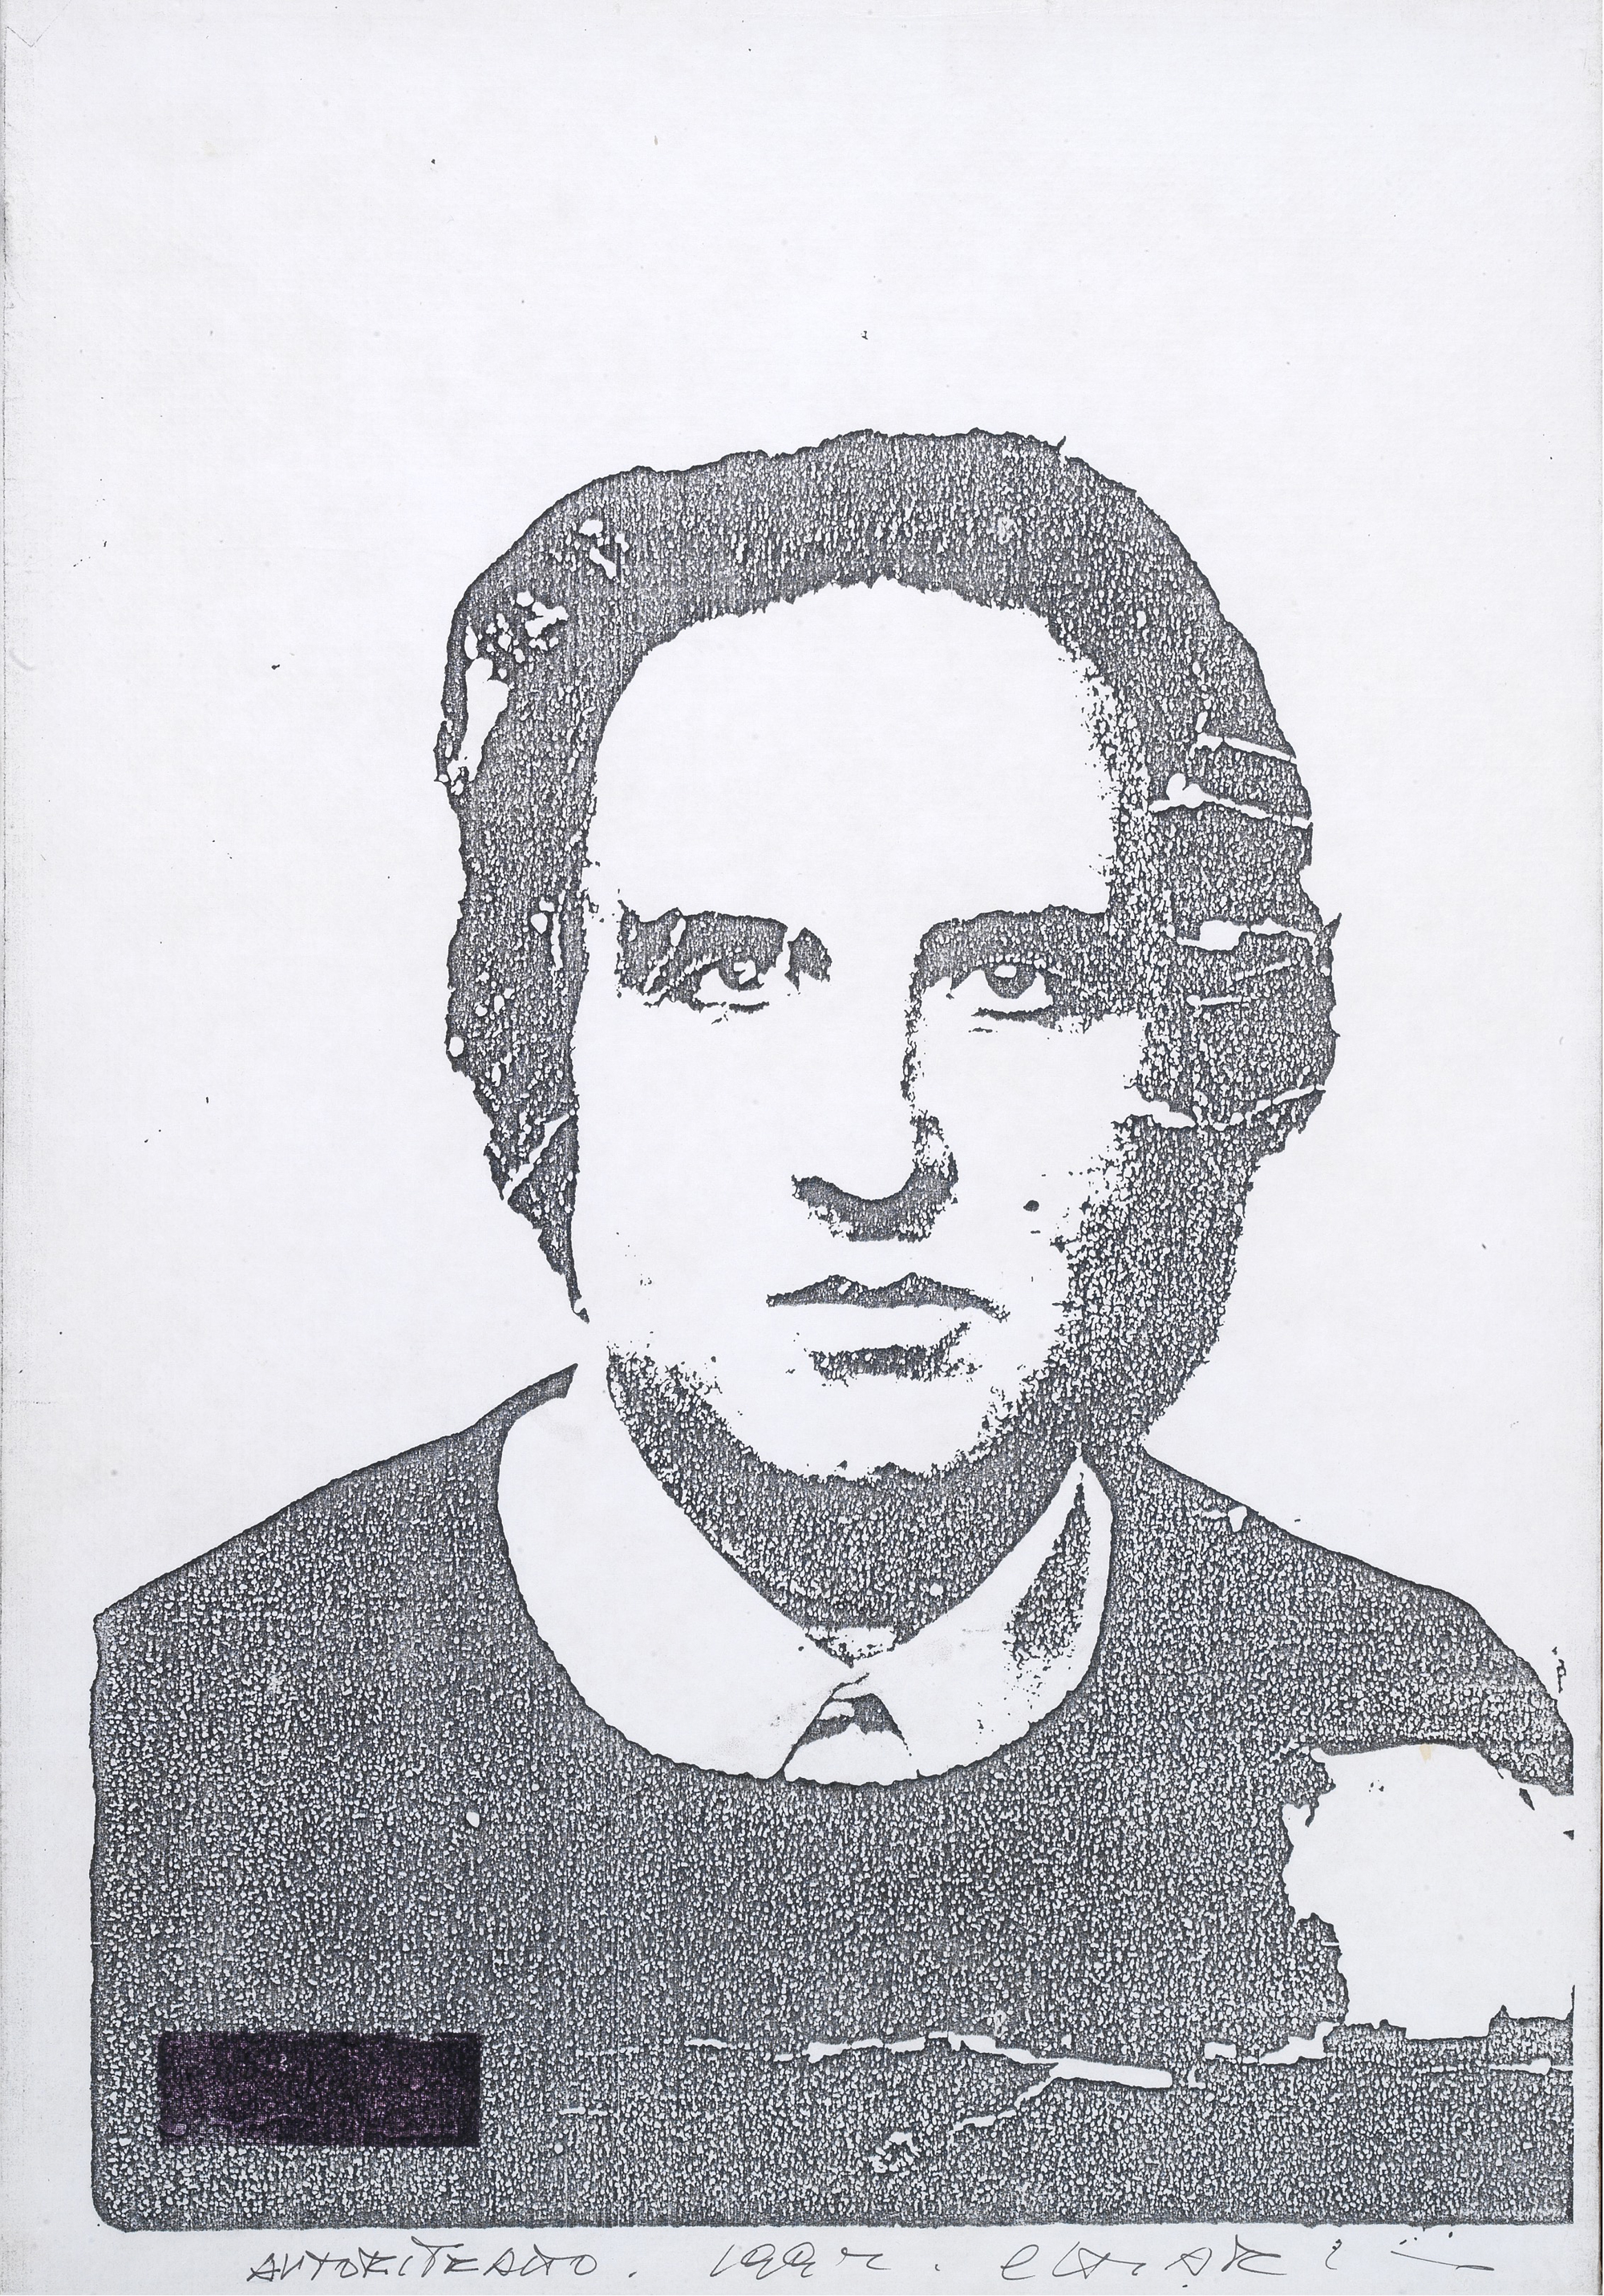 Giuseppe Chiari, ‘Autoritratto,’ 1992, fotocopia su carta su tela, cm 43 x 30, Courtesy Tornabuoni Art